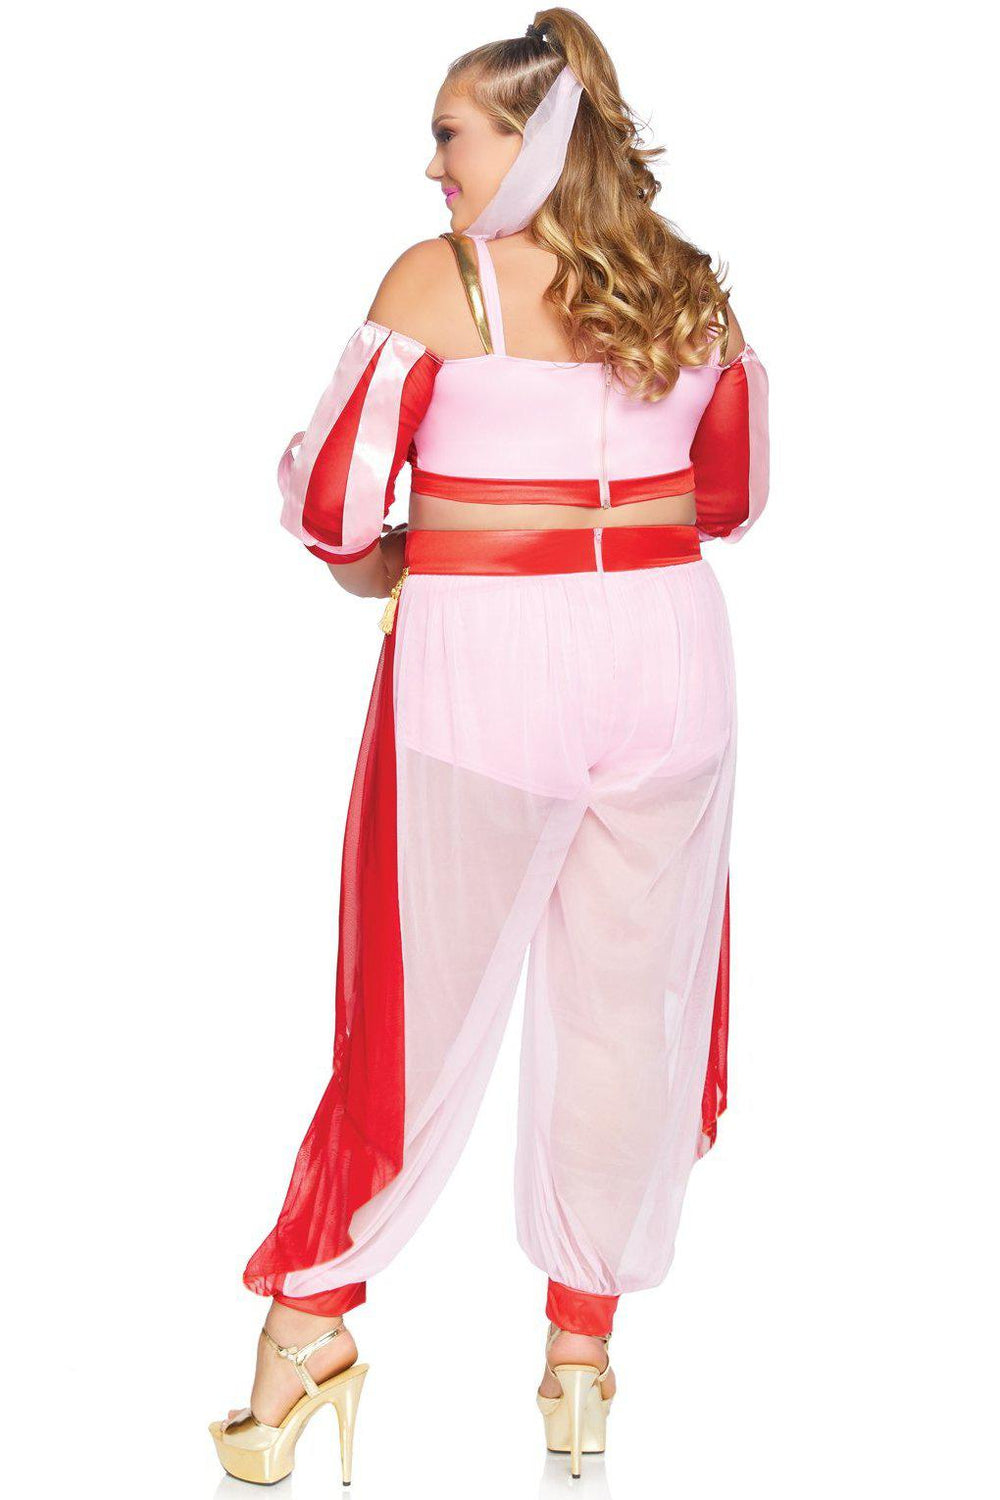 Plus Size Dreamy Genie Costume-Fairytale Costumes-Leg Avenue-SEXYSHOES.COM